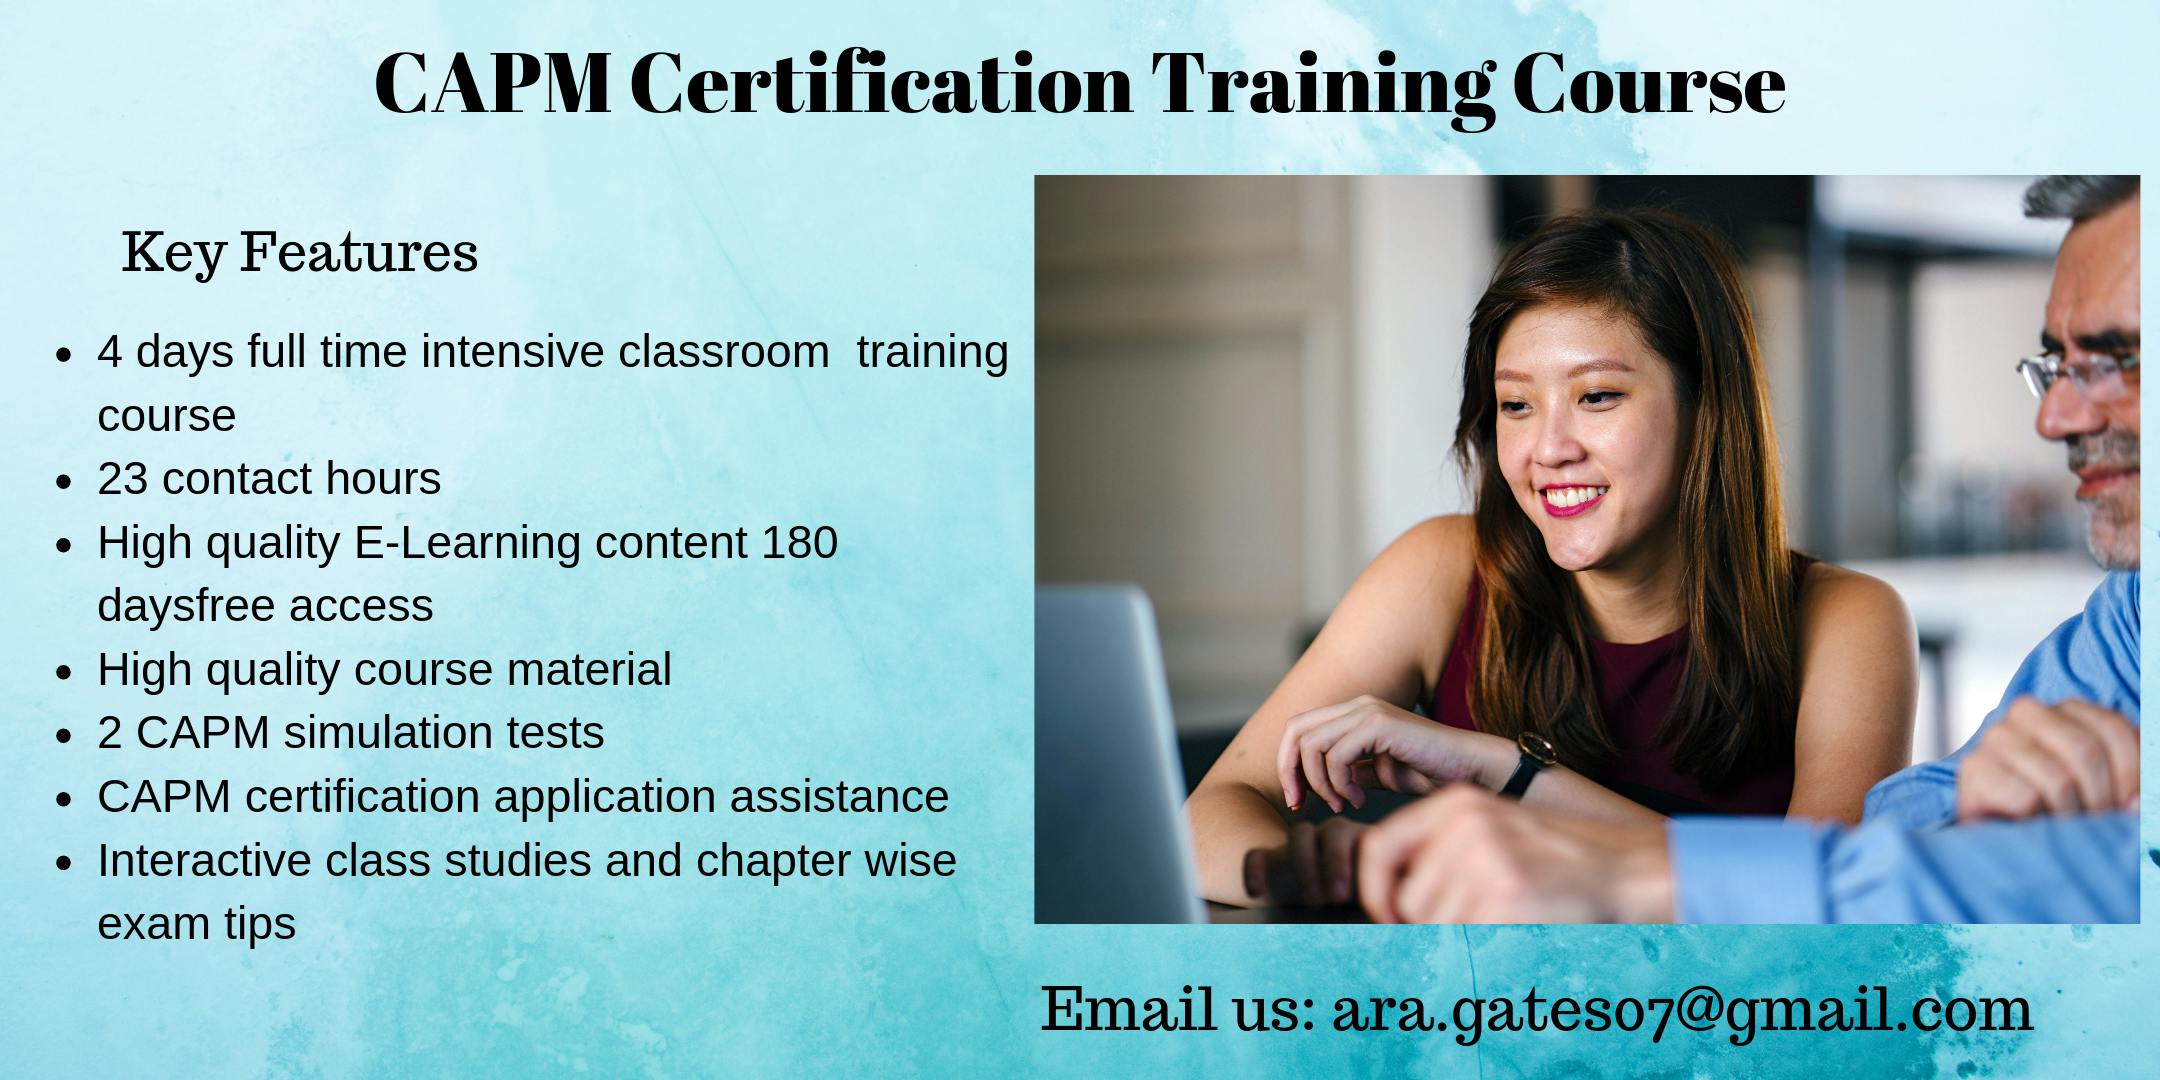 CAPM Training Course in Dallas, TX